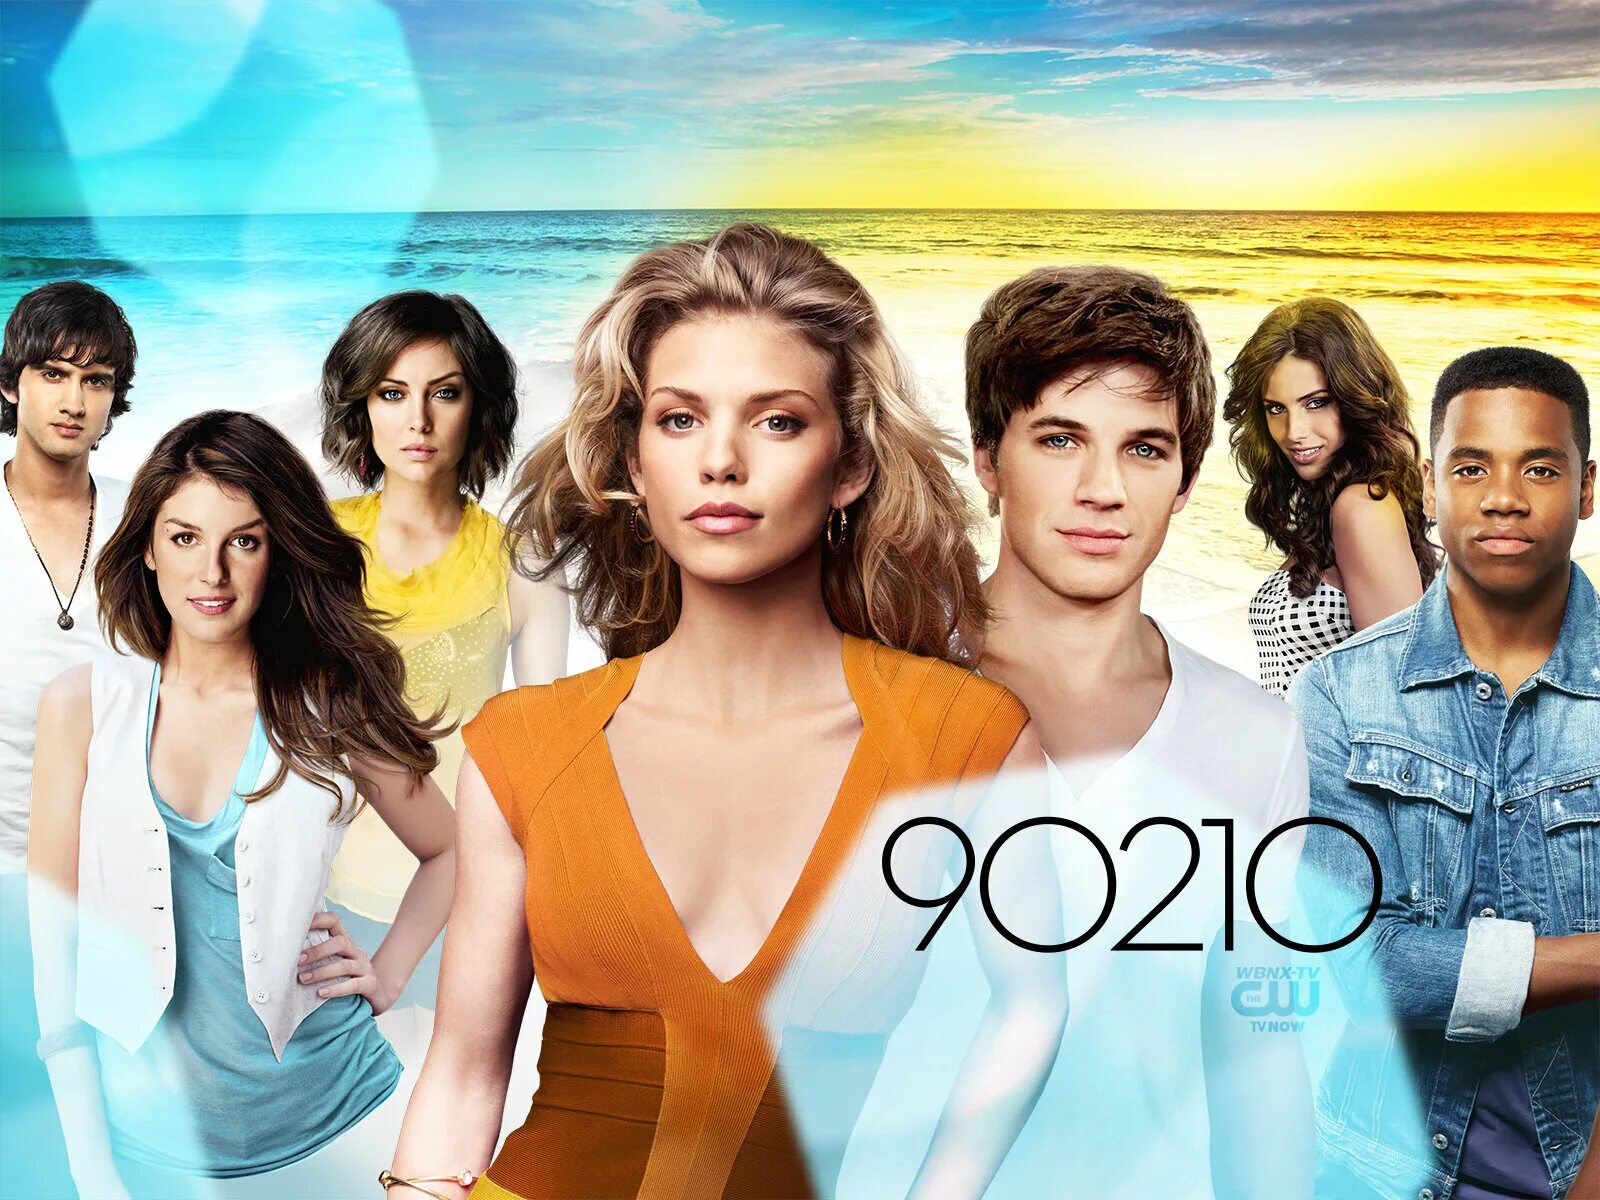 Новое поколение 10. Беверли-Хиллз 90210 новое поколение. Брианна Хоуи 90210 новое поколение. Сидни Суини в Беверли-Хиллз 90210: новое поколение.